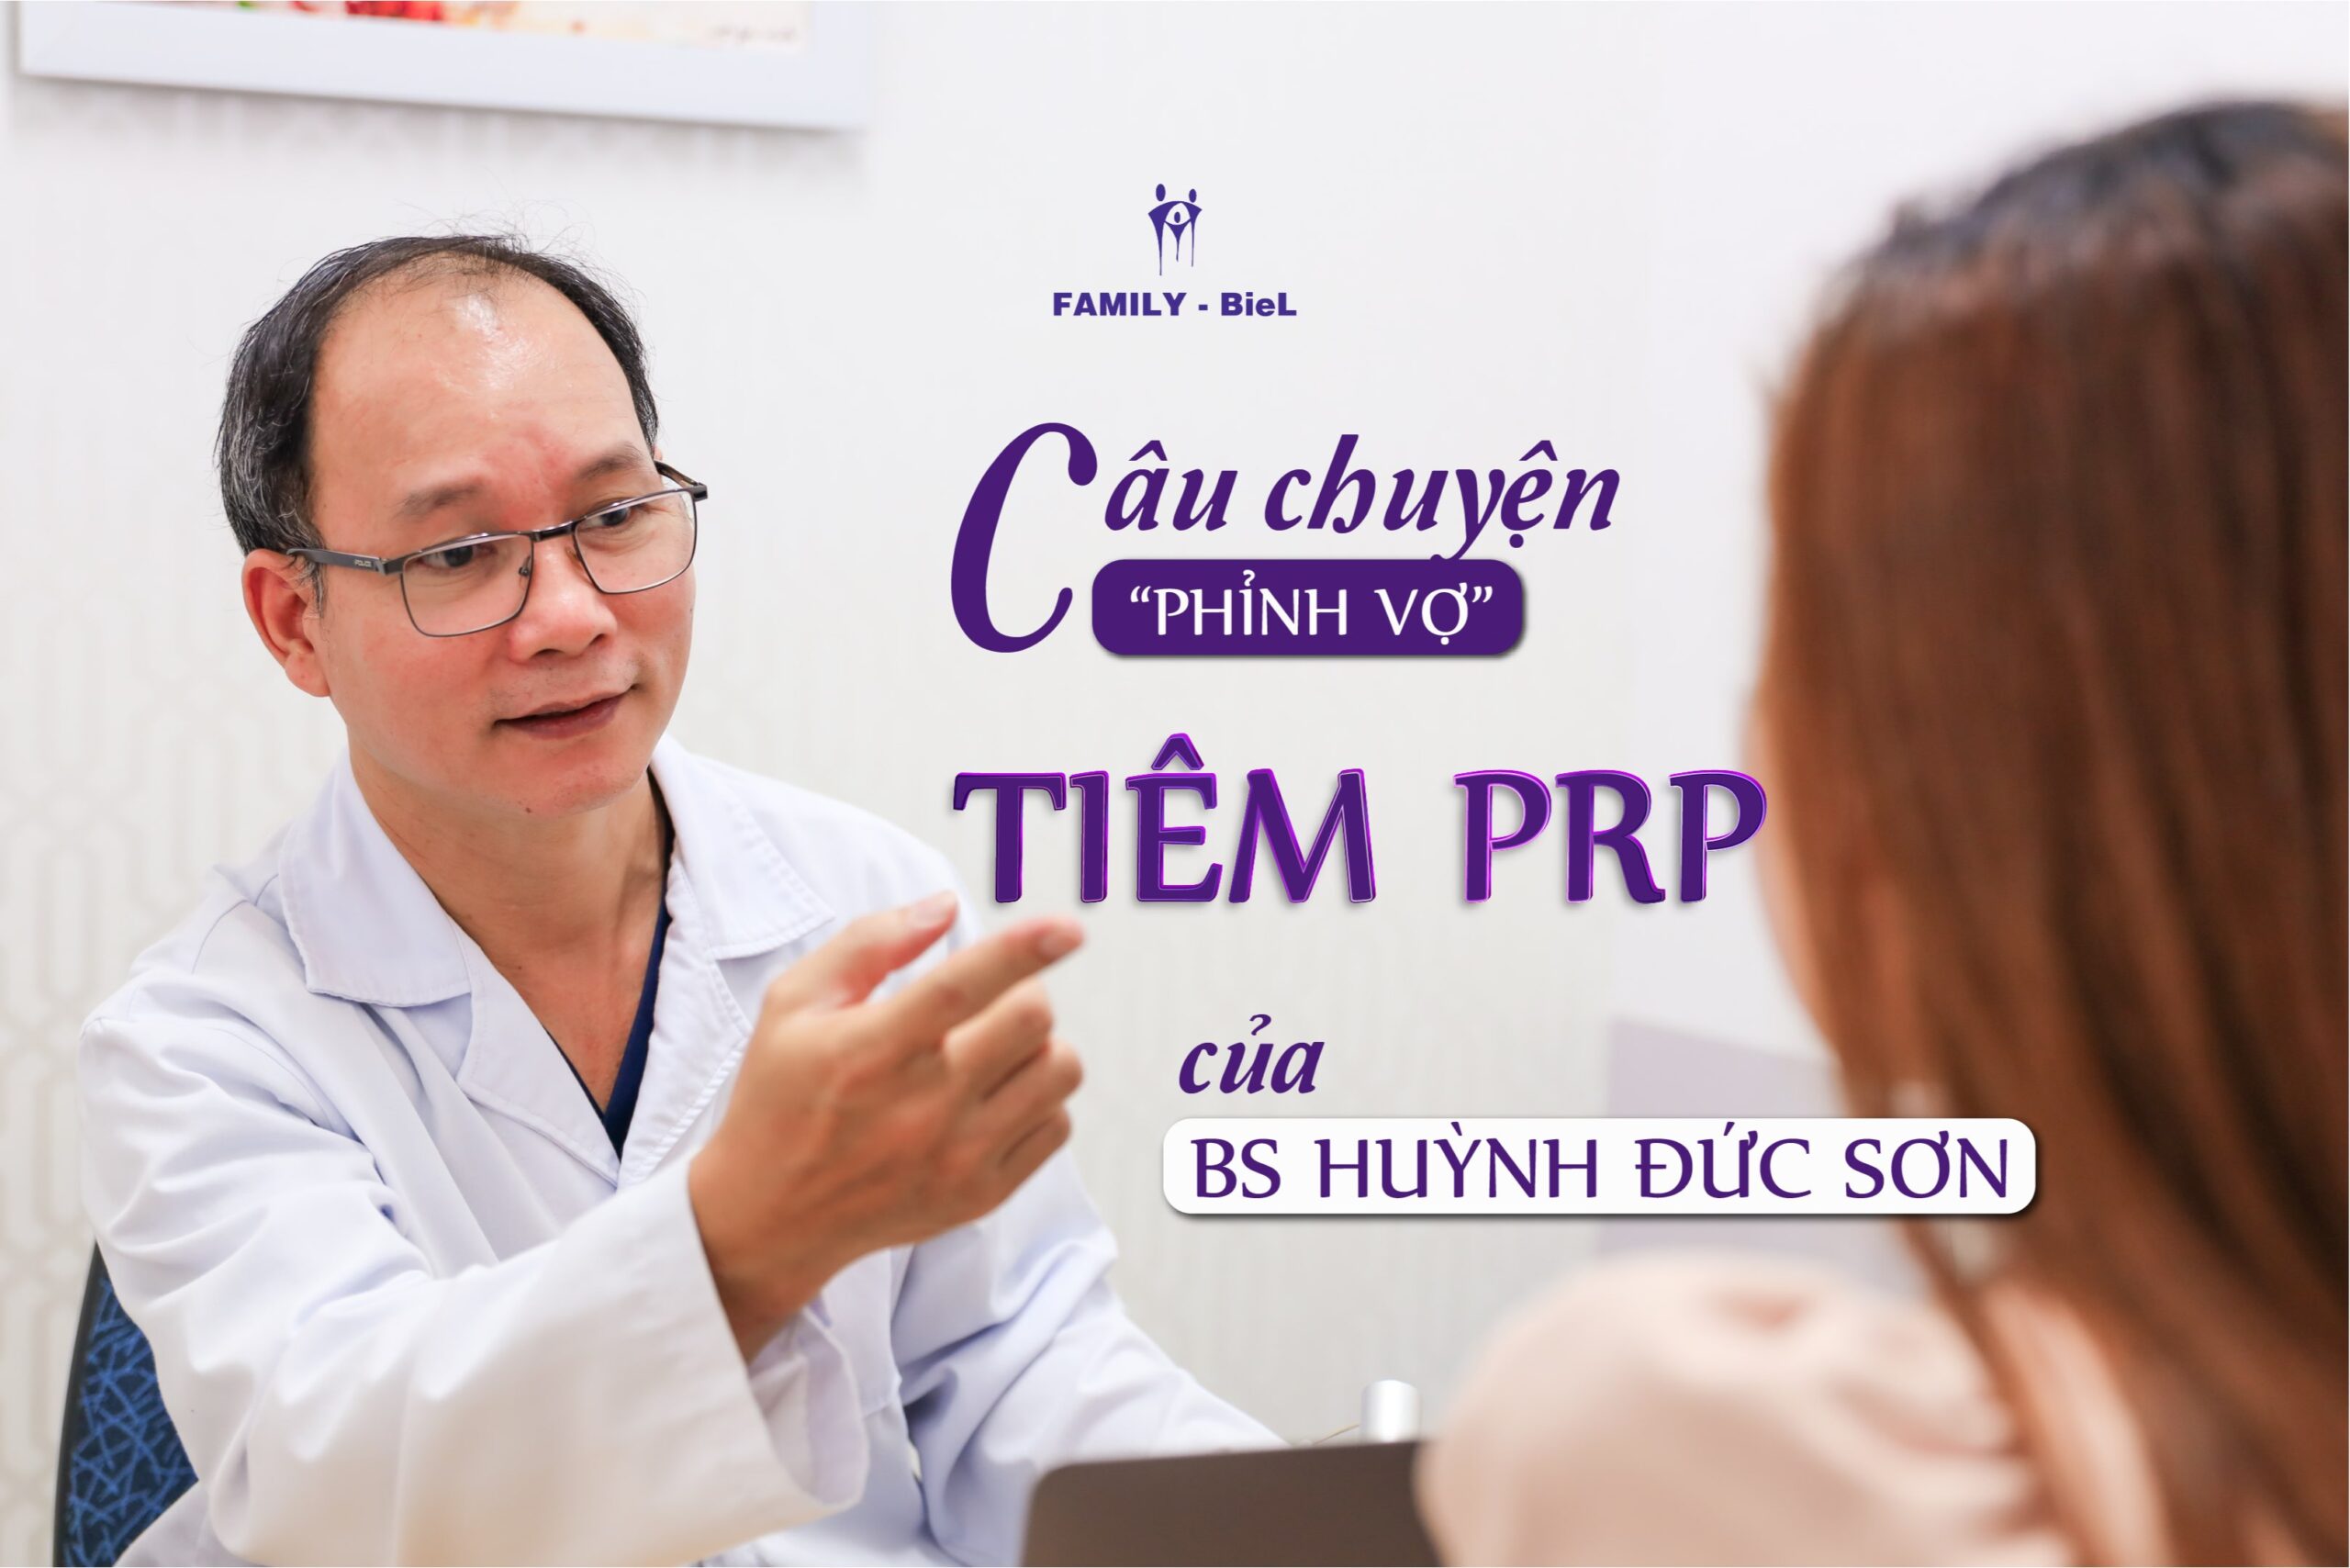 Câu chuyện "phỉnh vợ" tiêm PRP của Bác sỹ Huỳnh Đức Sơn